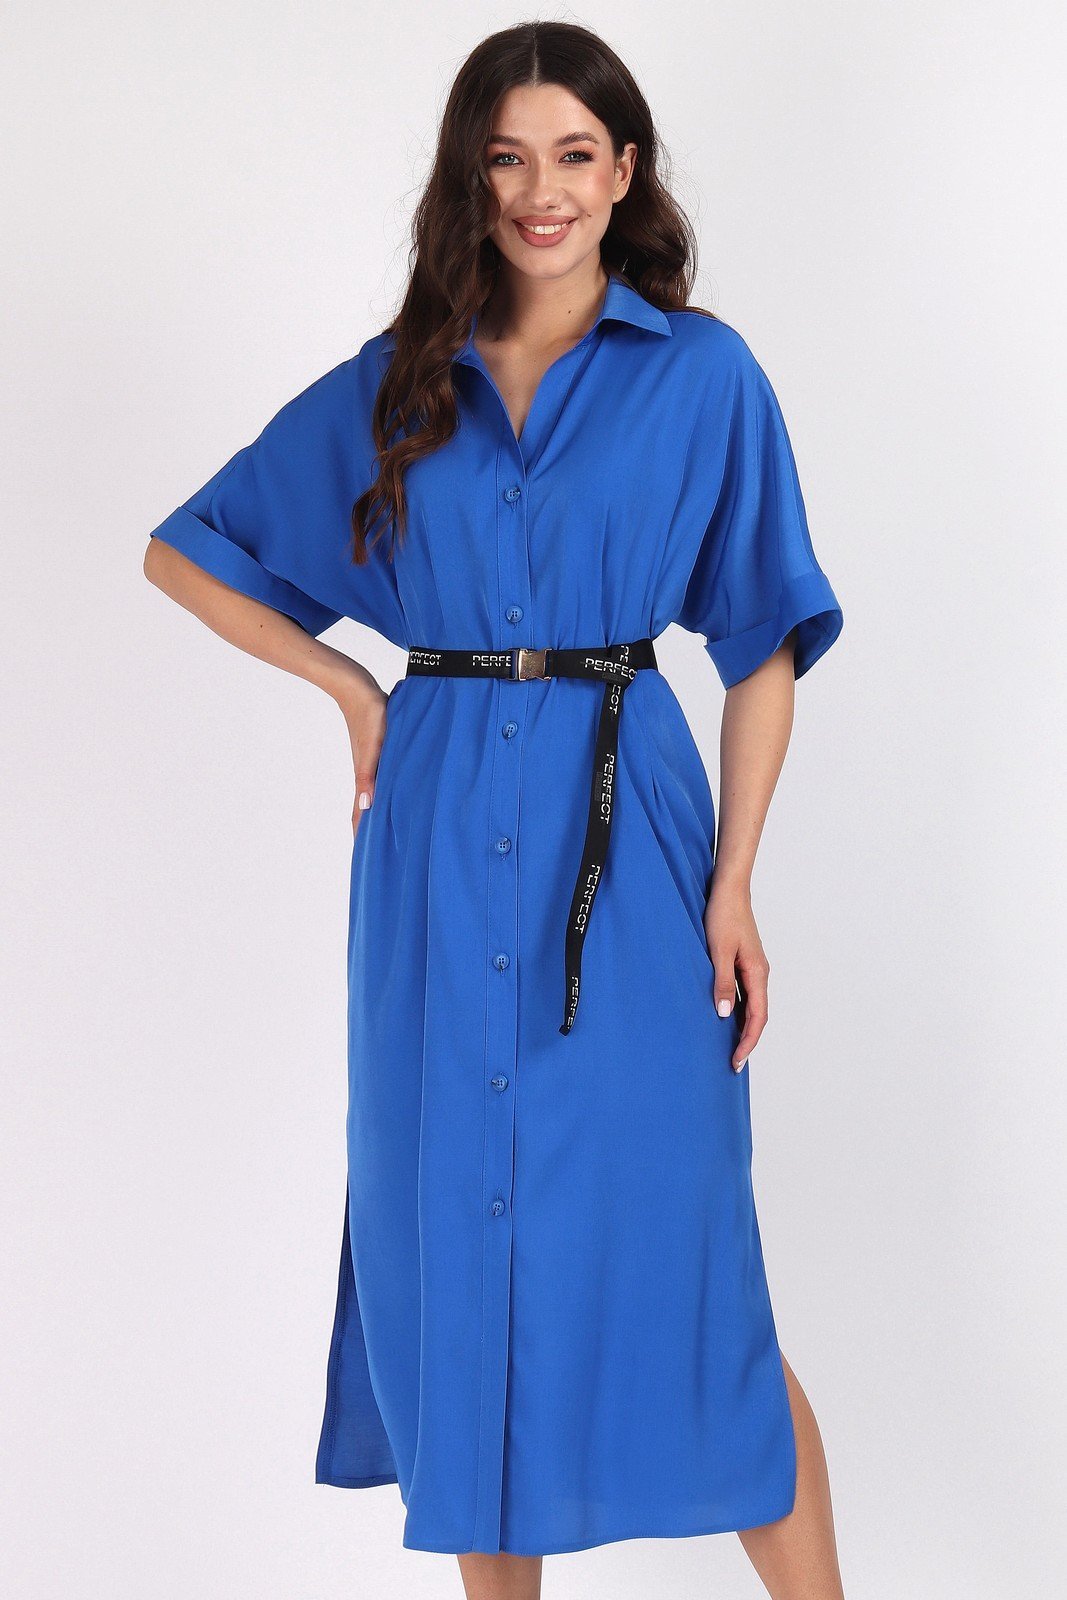 Платье 1460-1 Mia-Moda купить в интернет магазине Велесмода